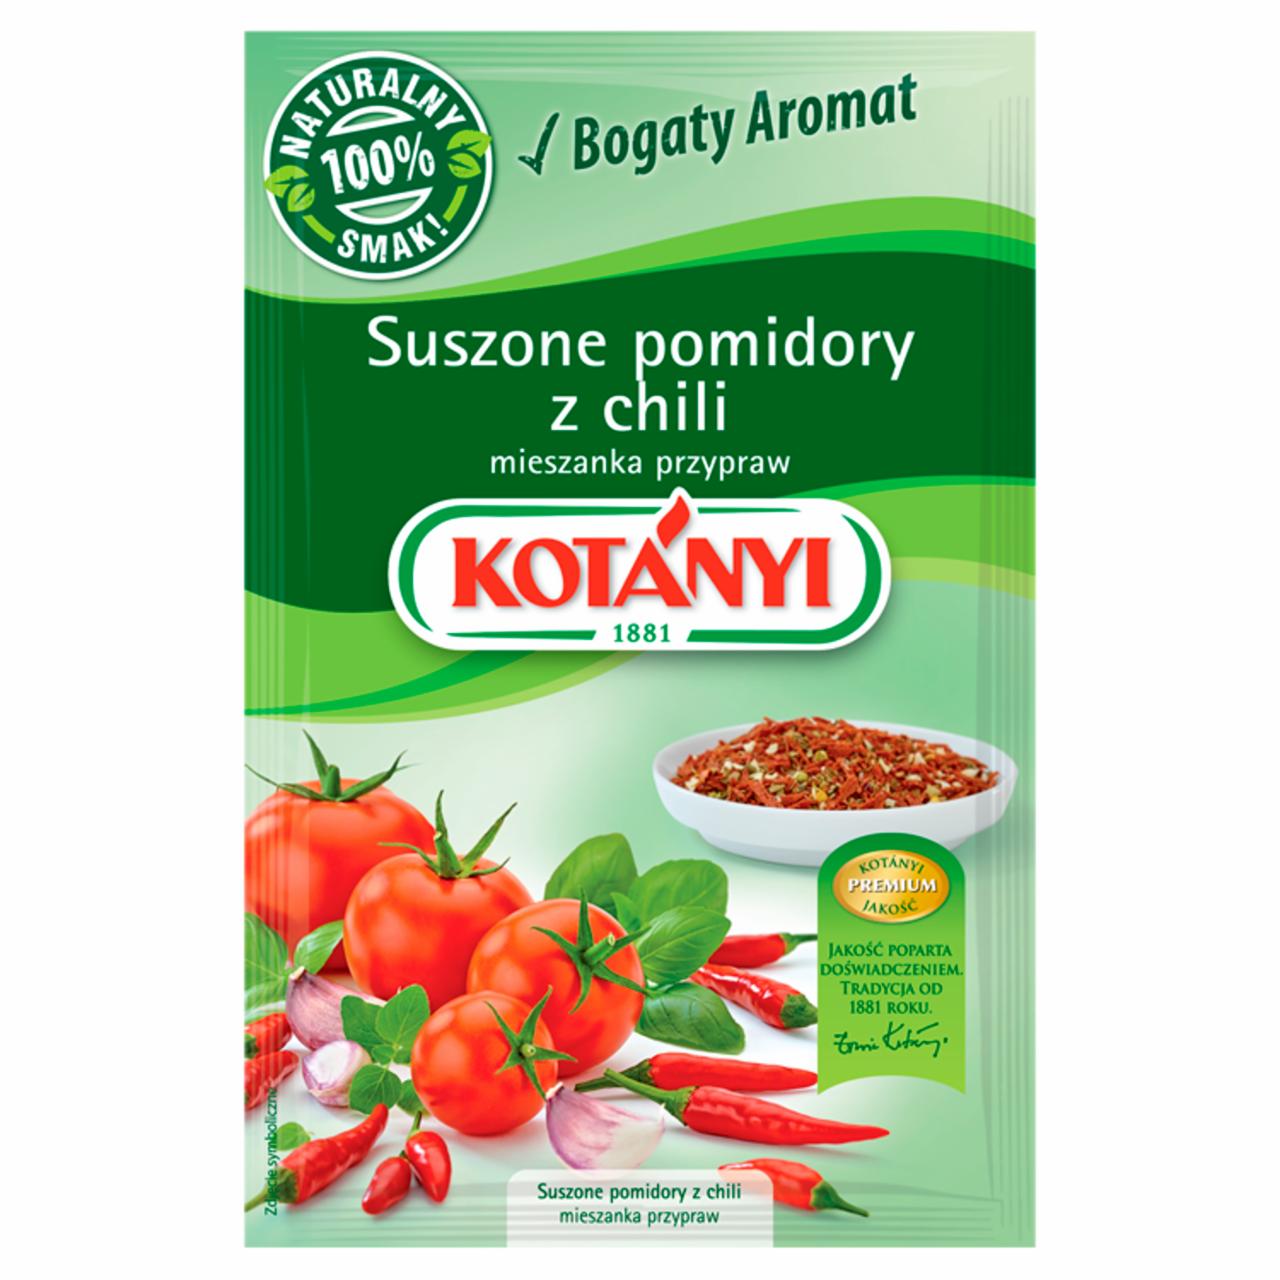 Zdjęcia - Kotányi Suszone pomidory z chili mieszanka przypraw 22 g